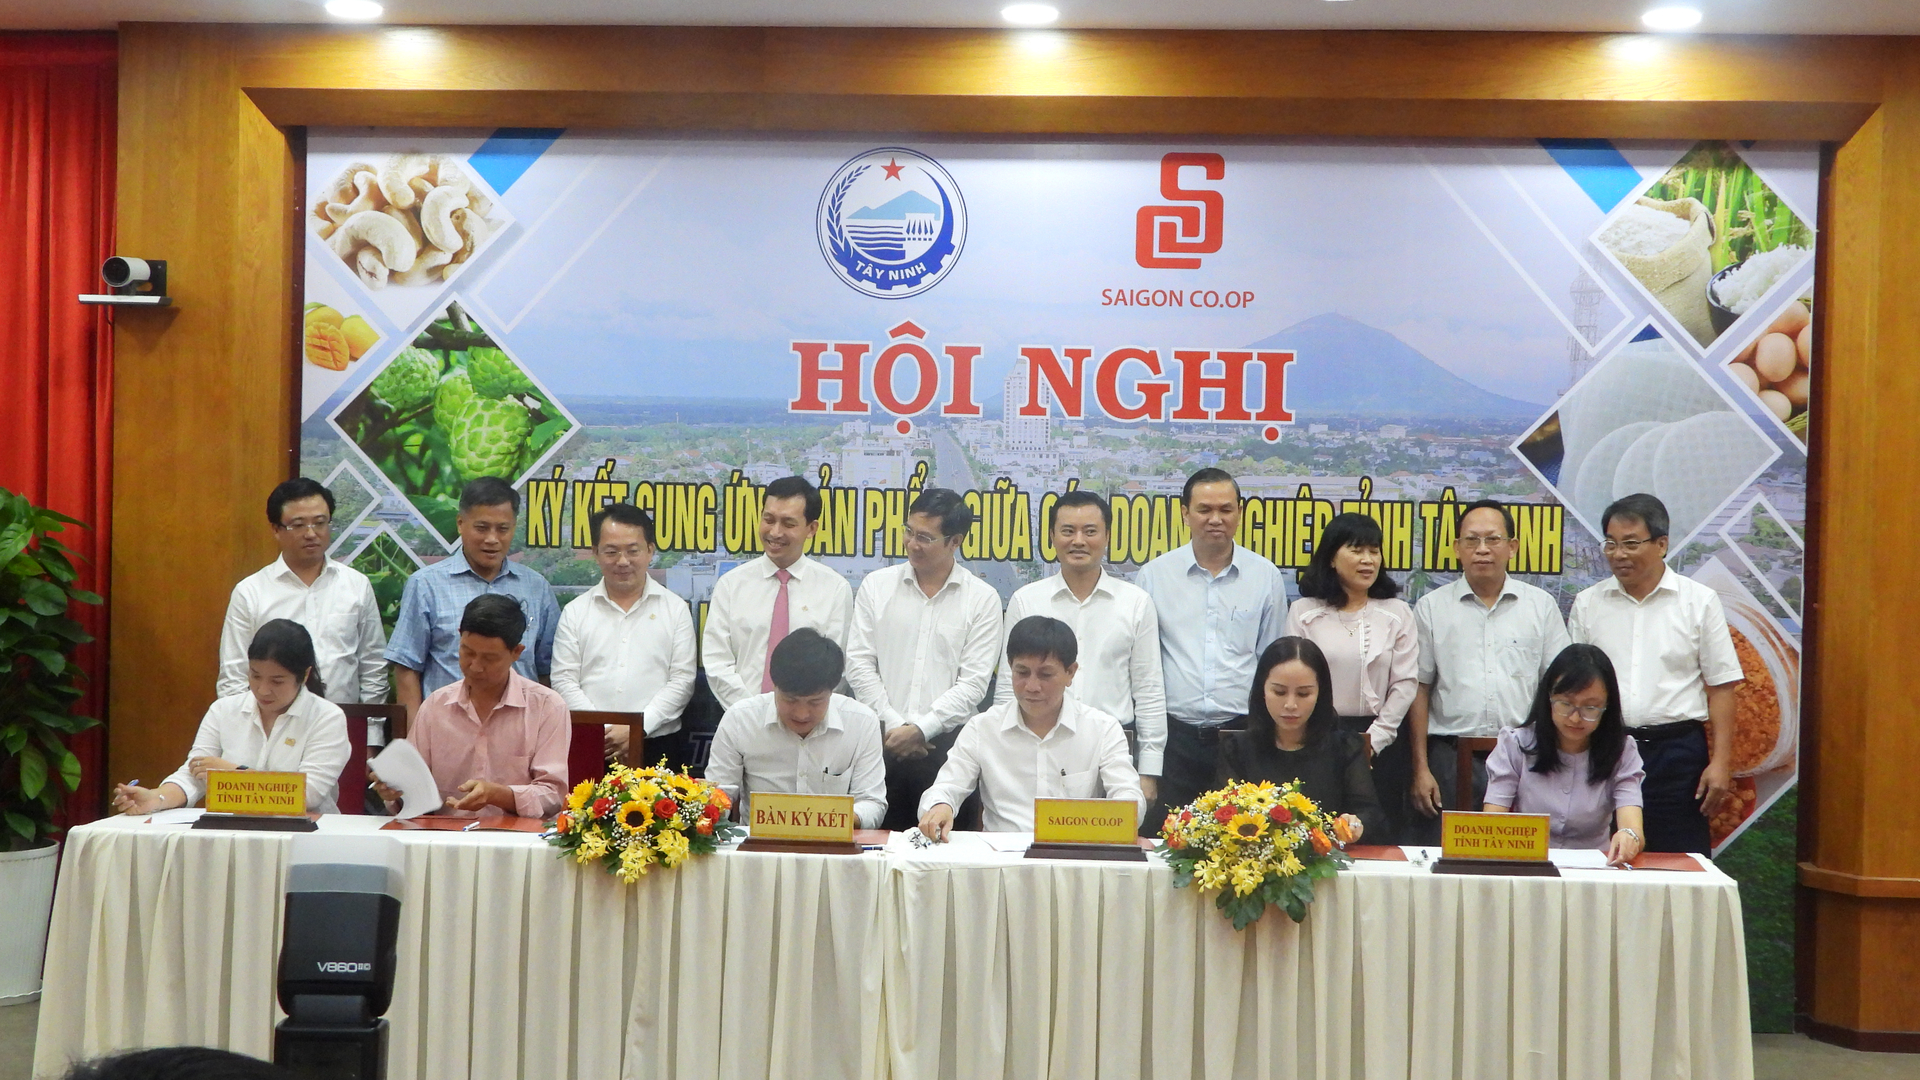 Đại diện các tổ chức, cá nhân, doanh nghiệp tại Tây Ninh ký kết biên bản ghi nhớ hợp tác về tiêu thụ các sản phẩm với Saigon Co.op. Ảnh: Trần Trung.